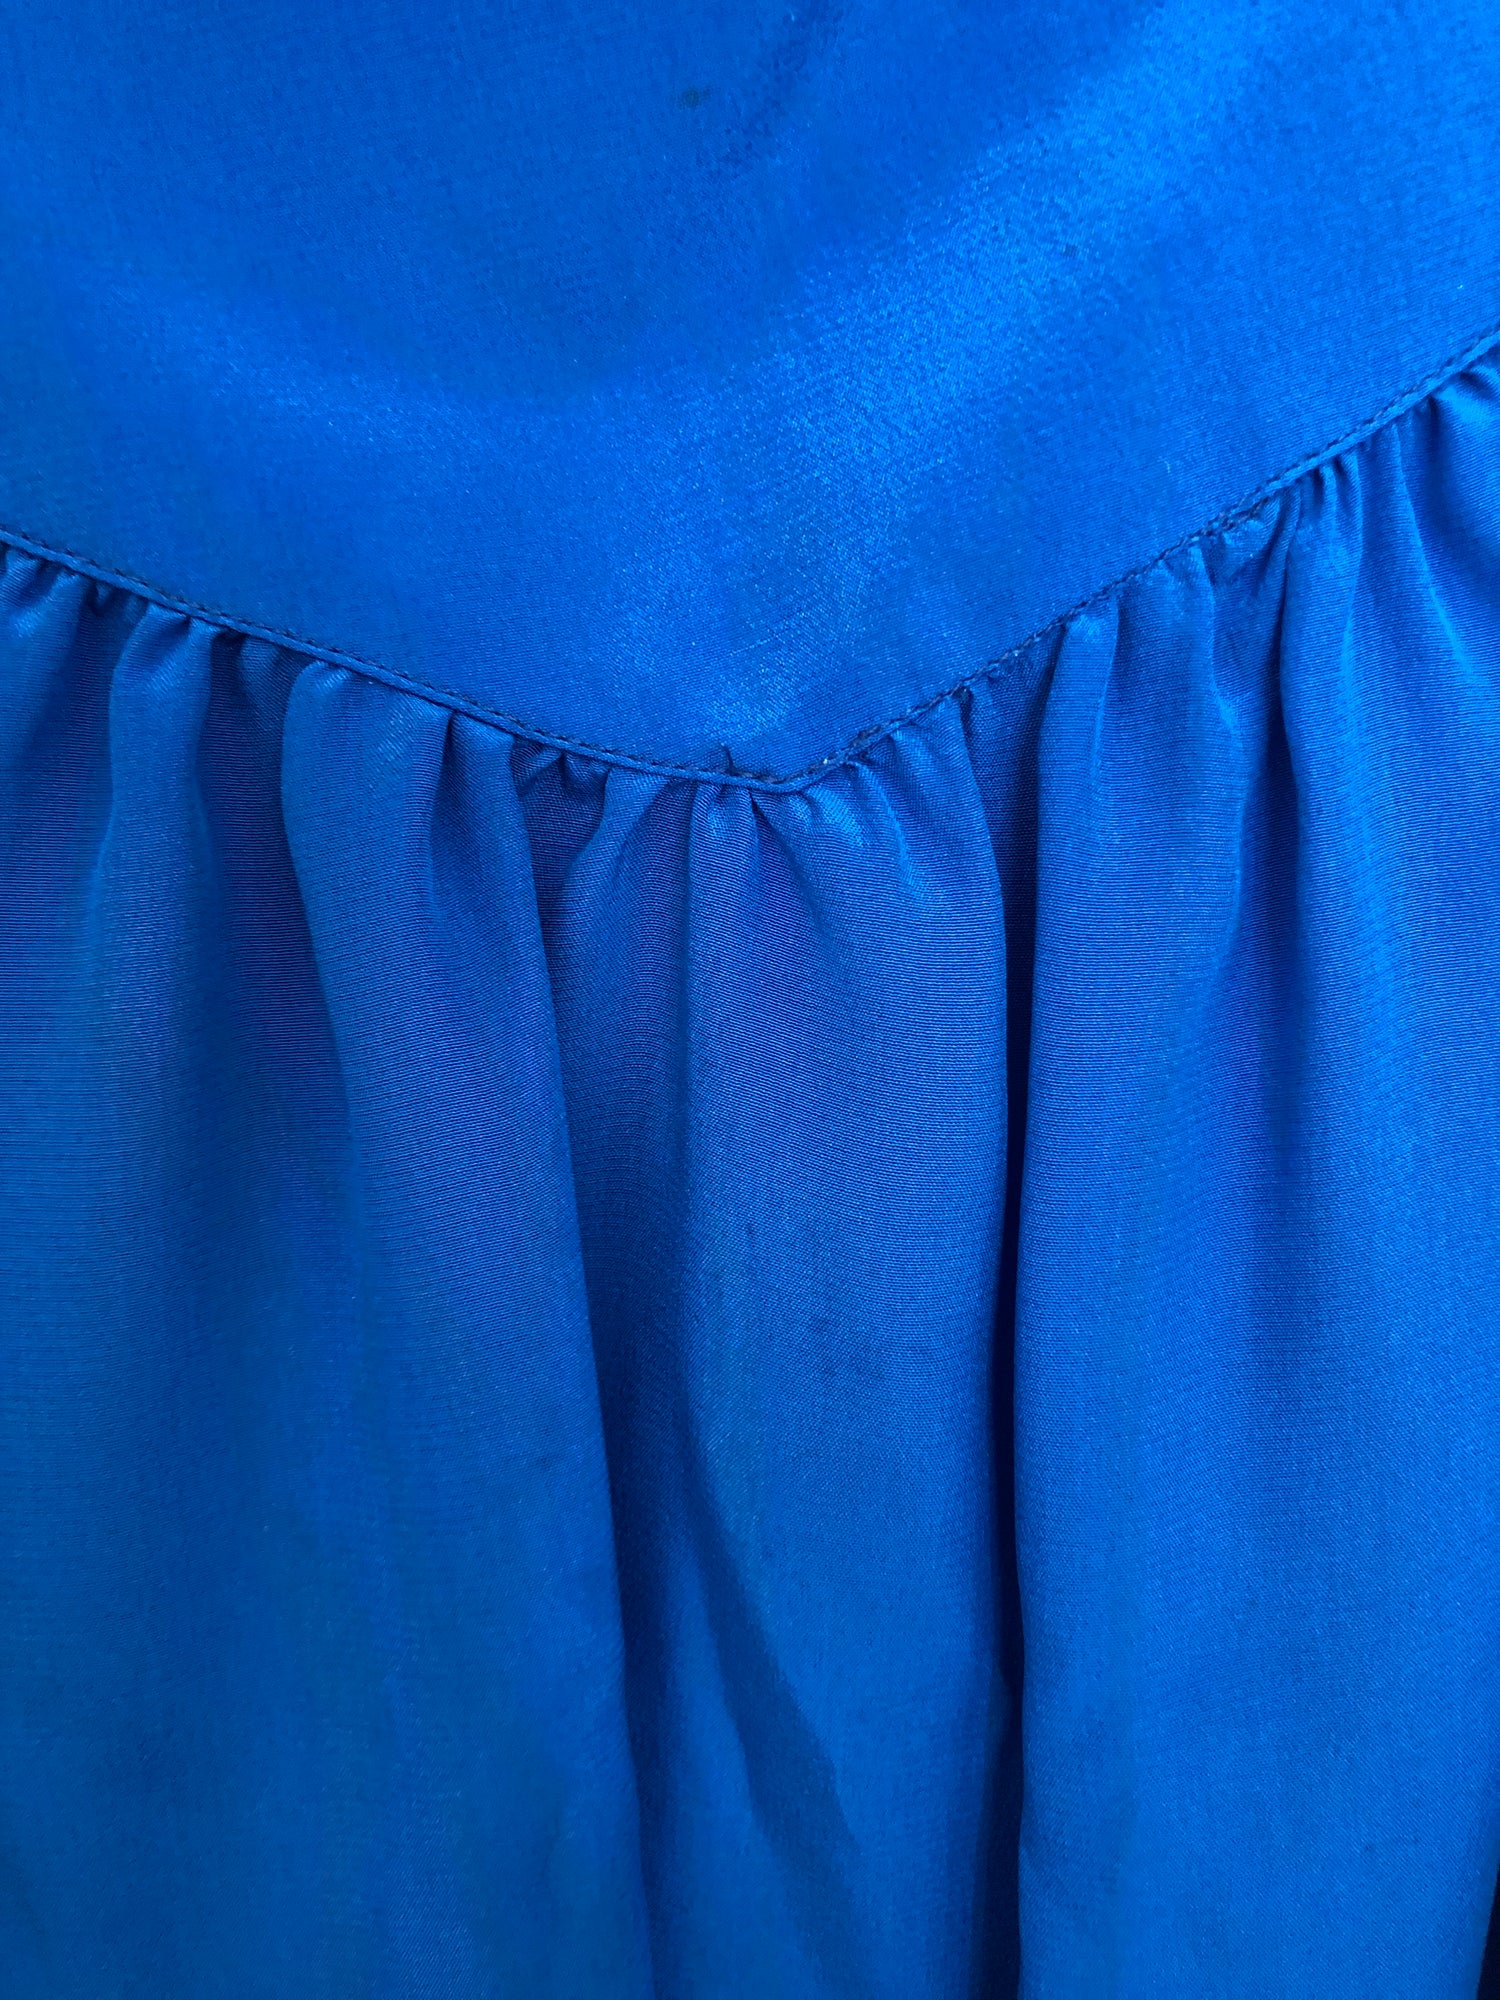 Louis Féraud vintage silk skirt - M - 1990s